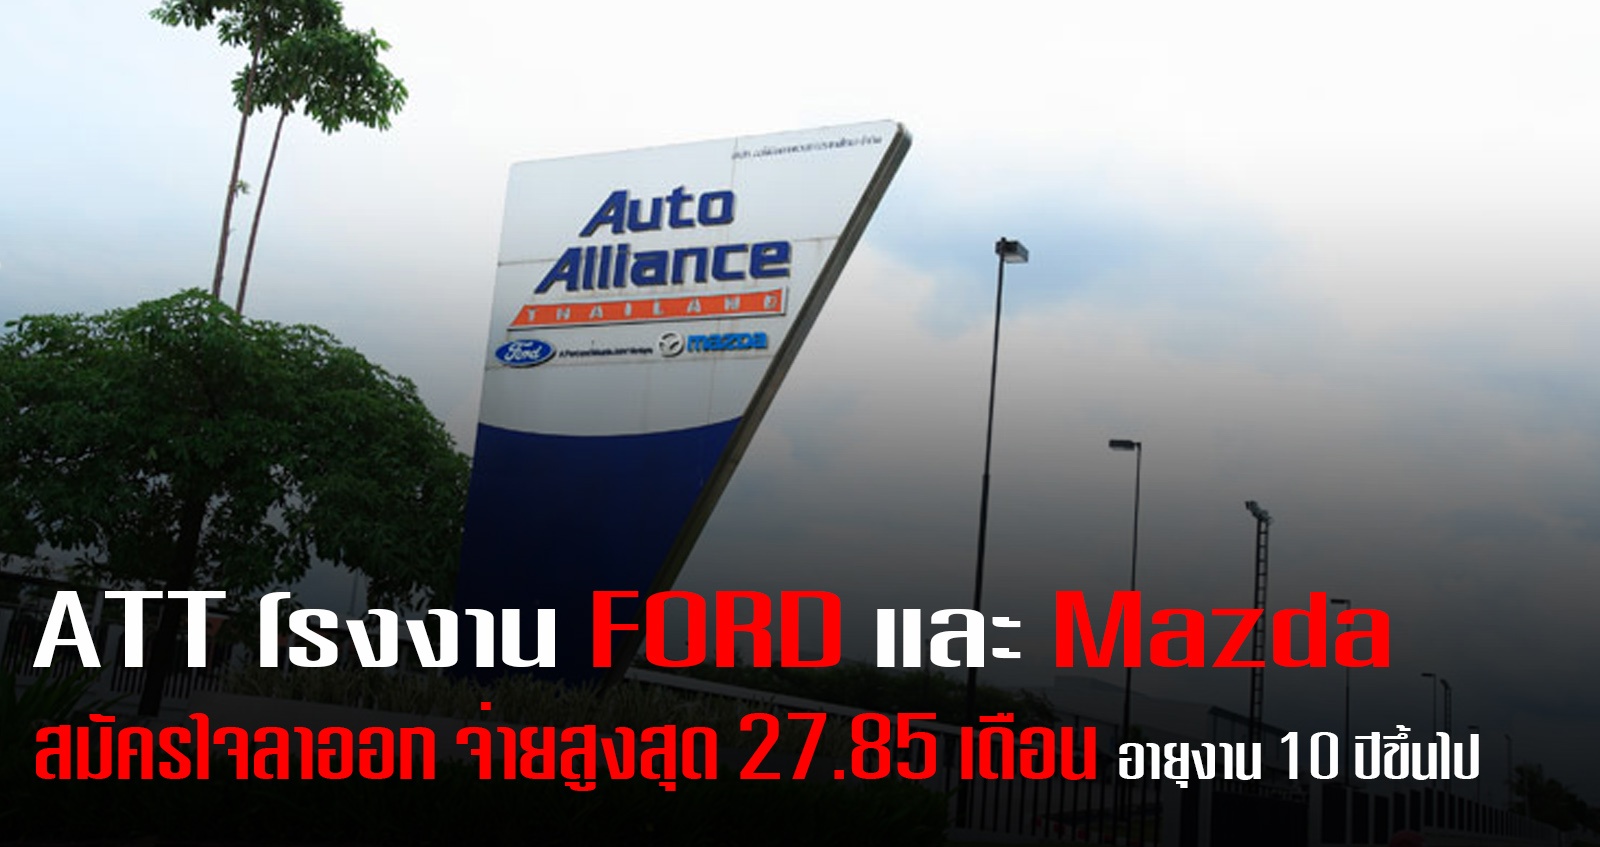 โรงงาน AAT ของ FORD และ Mazda เปิดสมัครใจลาออก จ่ายสูงสุด 27.85 เดือน อายุงาน 10 ปีขึ้นไป